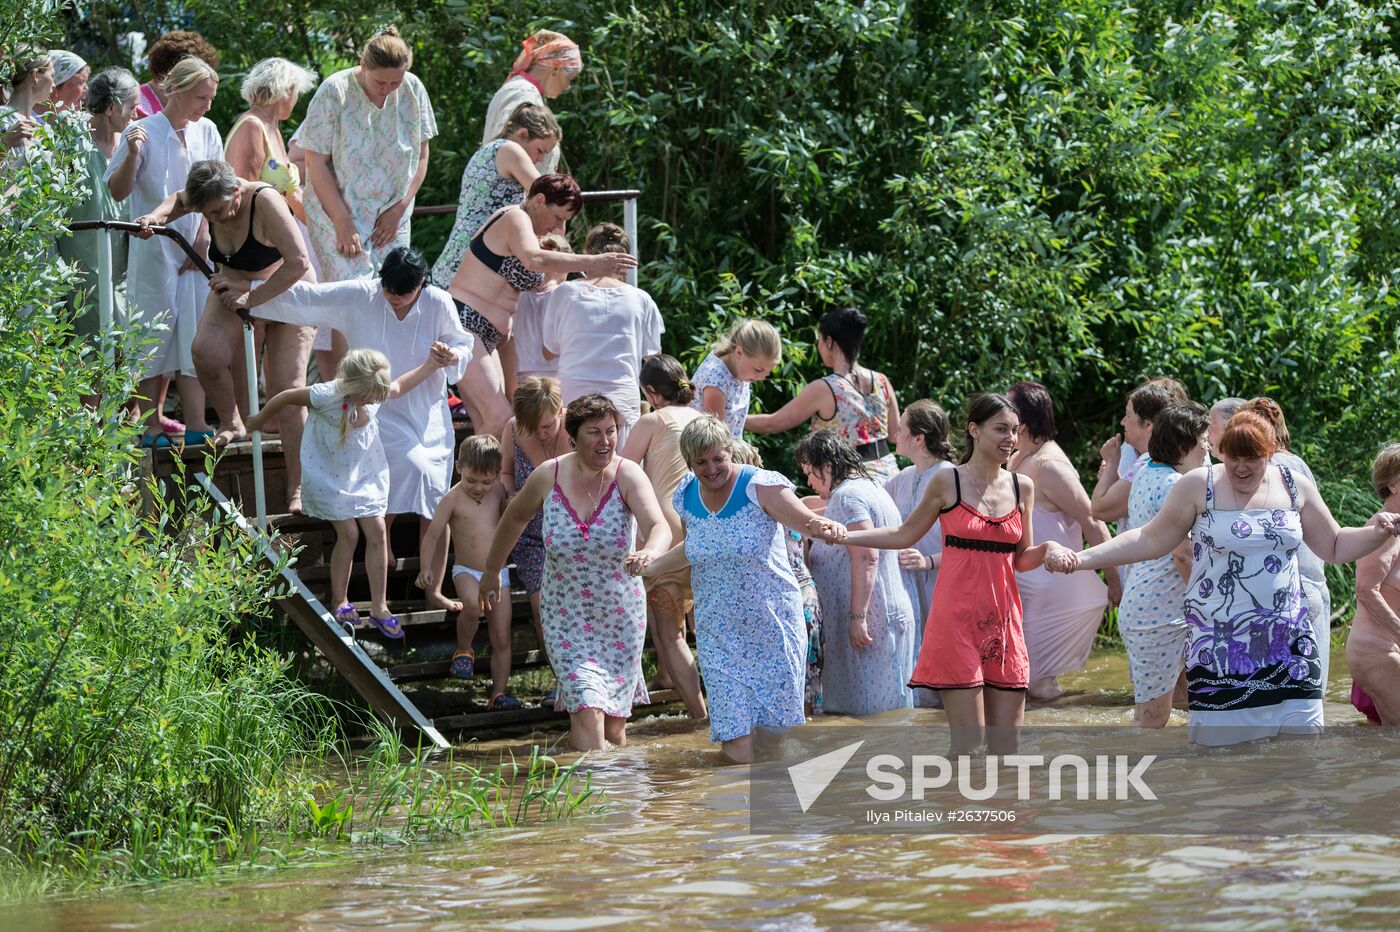 Velikaya River religious procession in Kirov Region